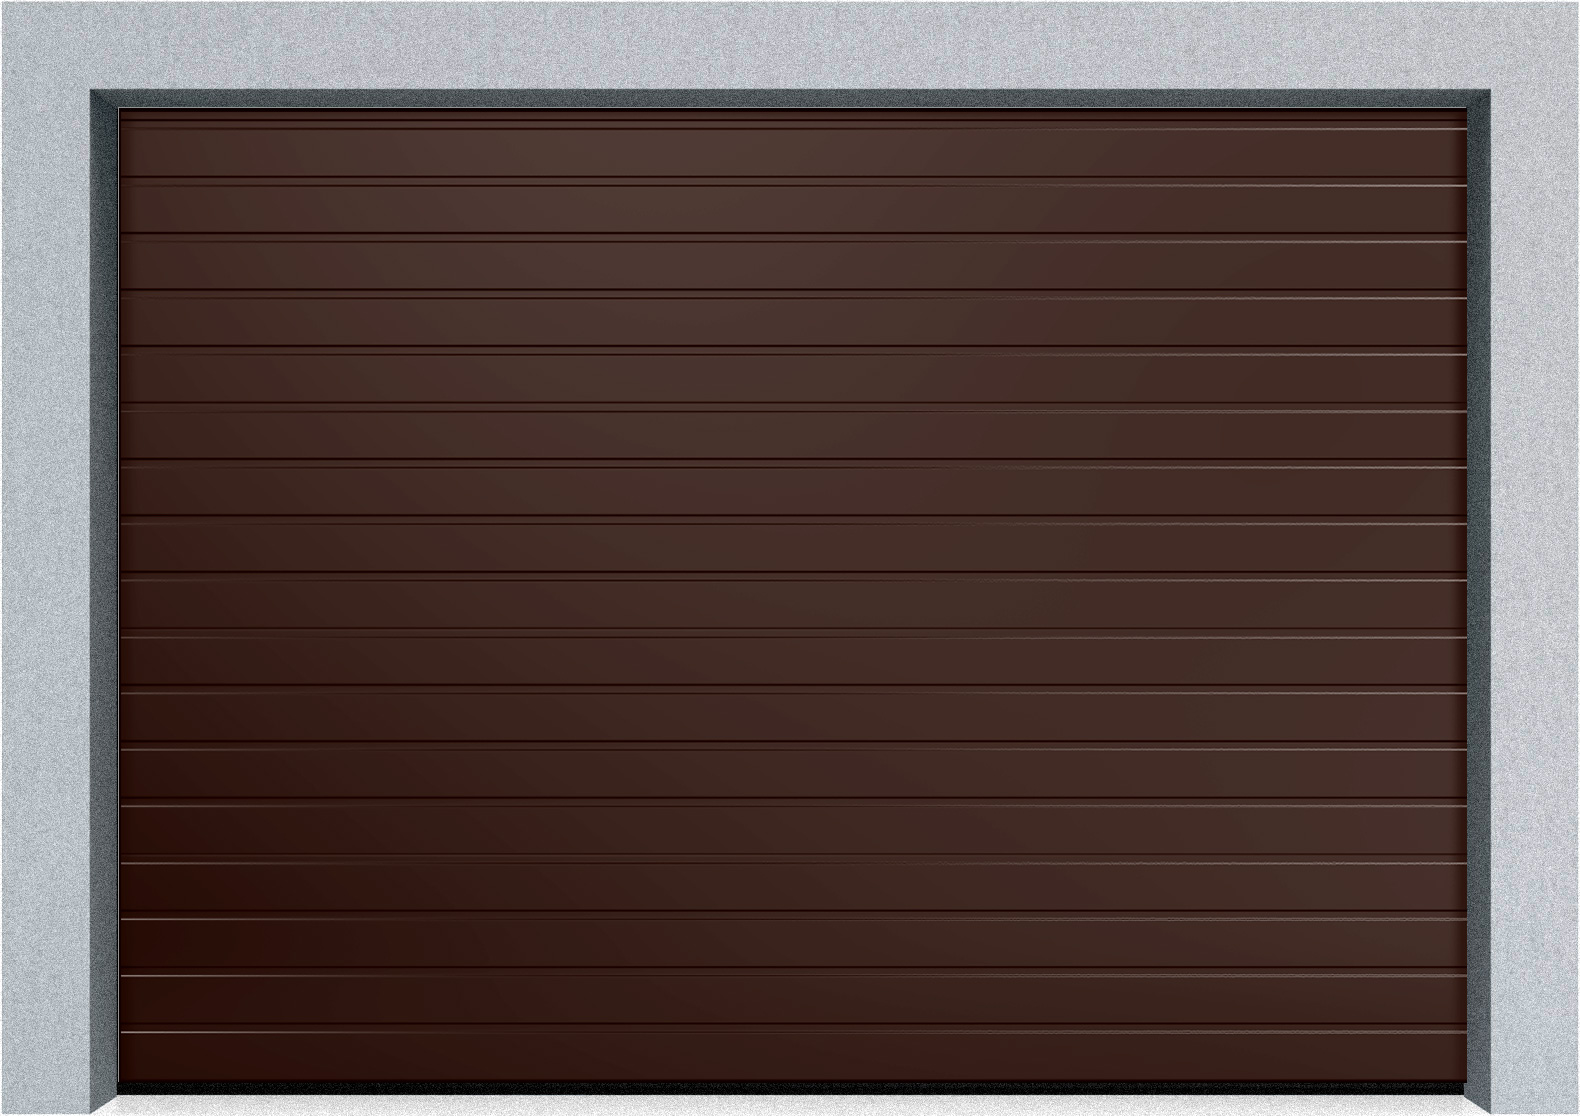  Автоматические секционные гаражные ворота DoorHan RSD02 4100х2600 S-гофр, M-гофр, Микроволна стандартные цвета, фото 3 